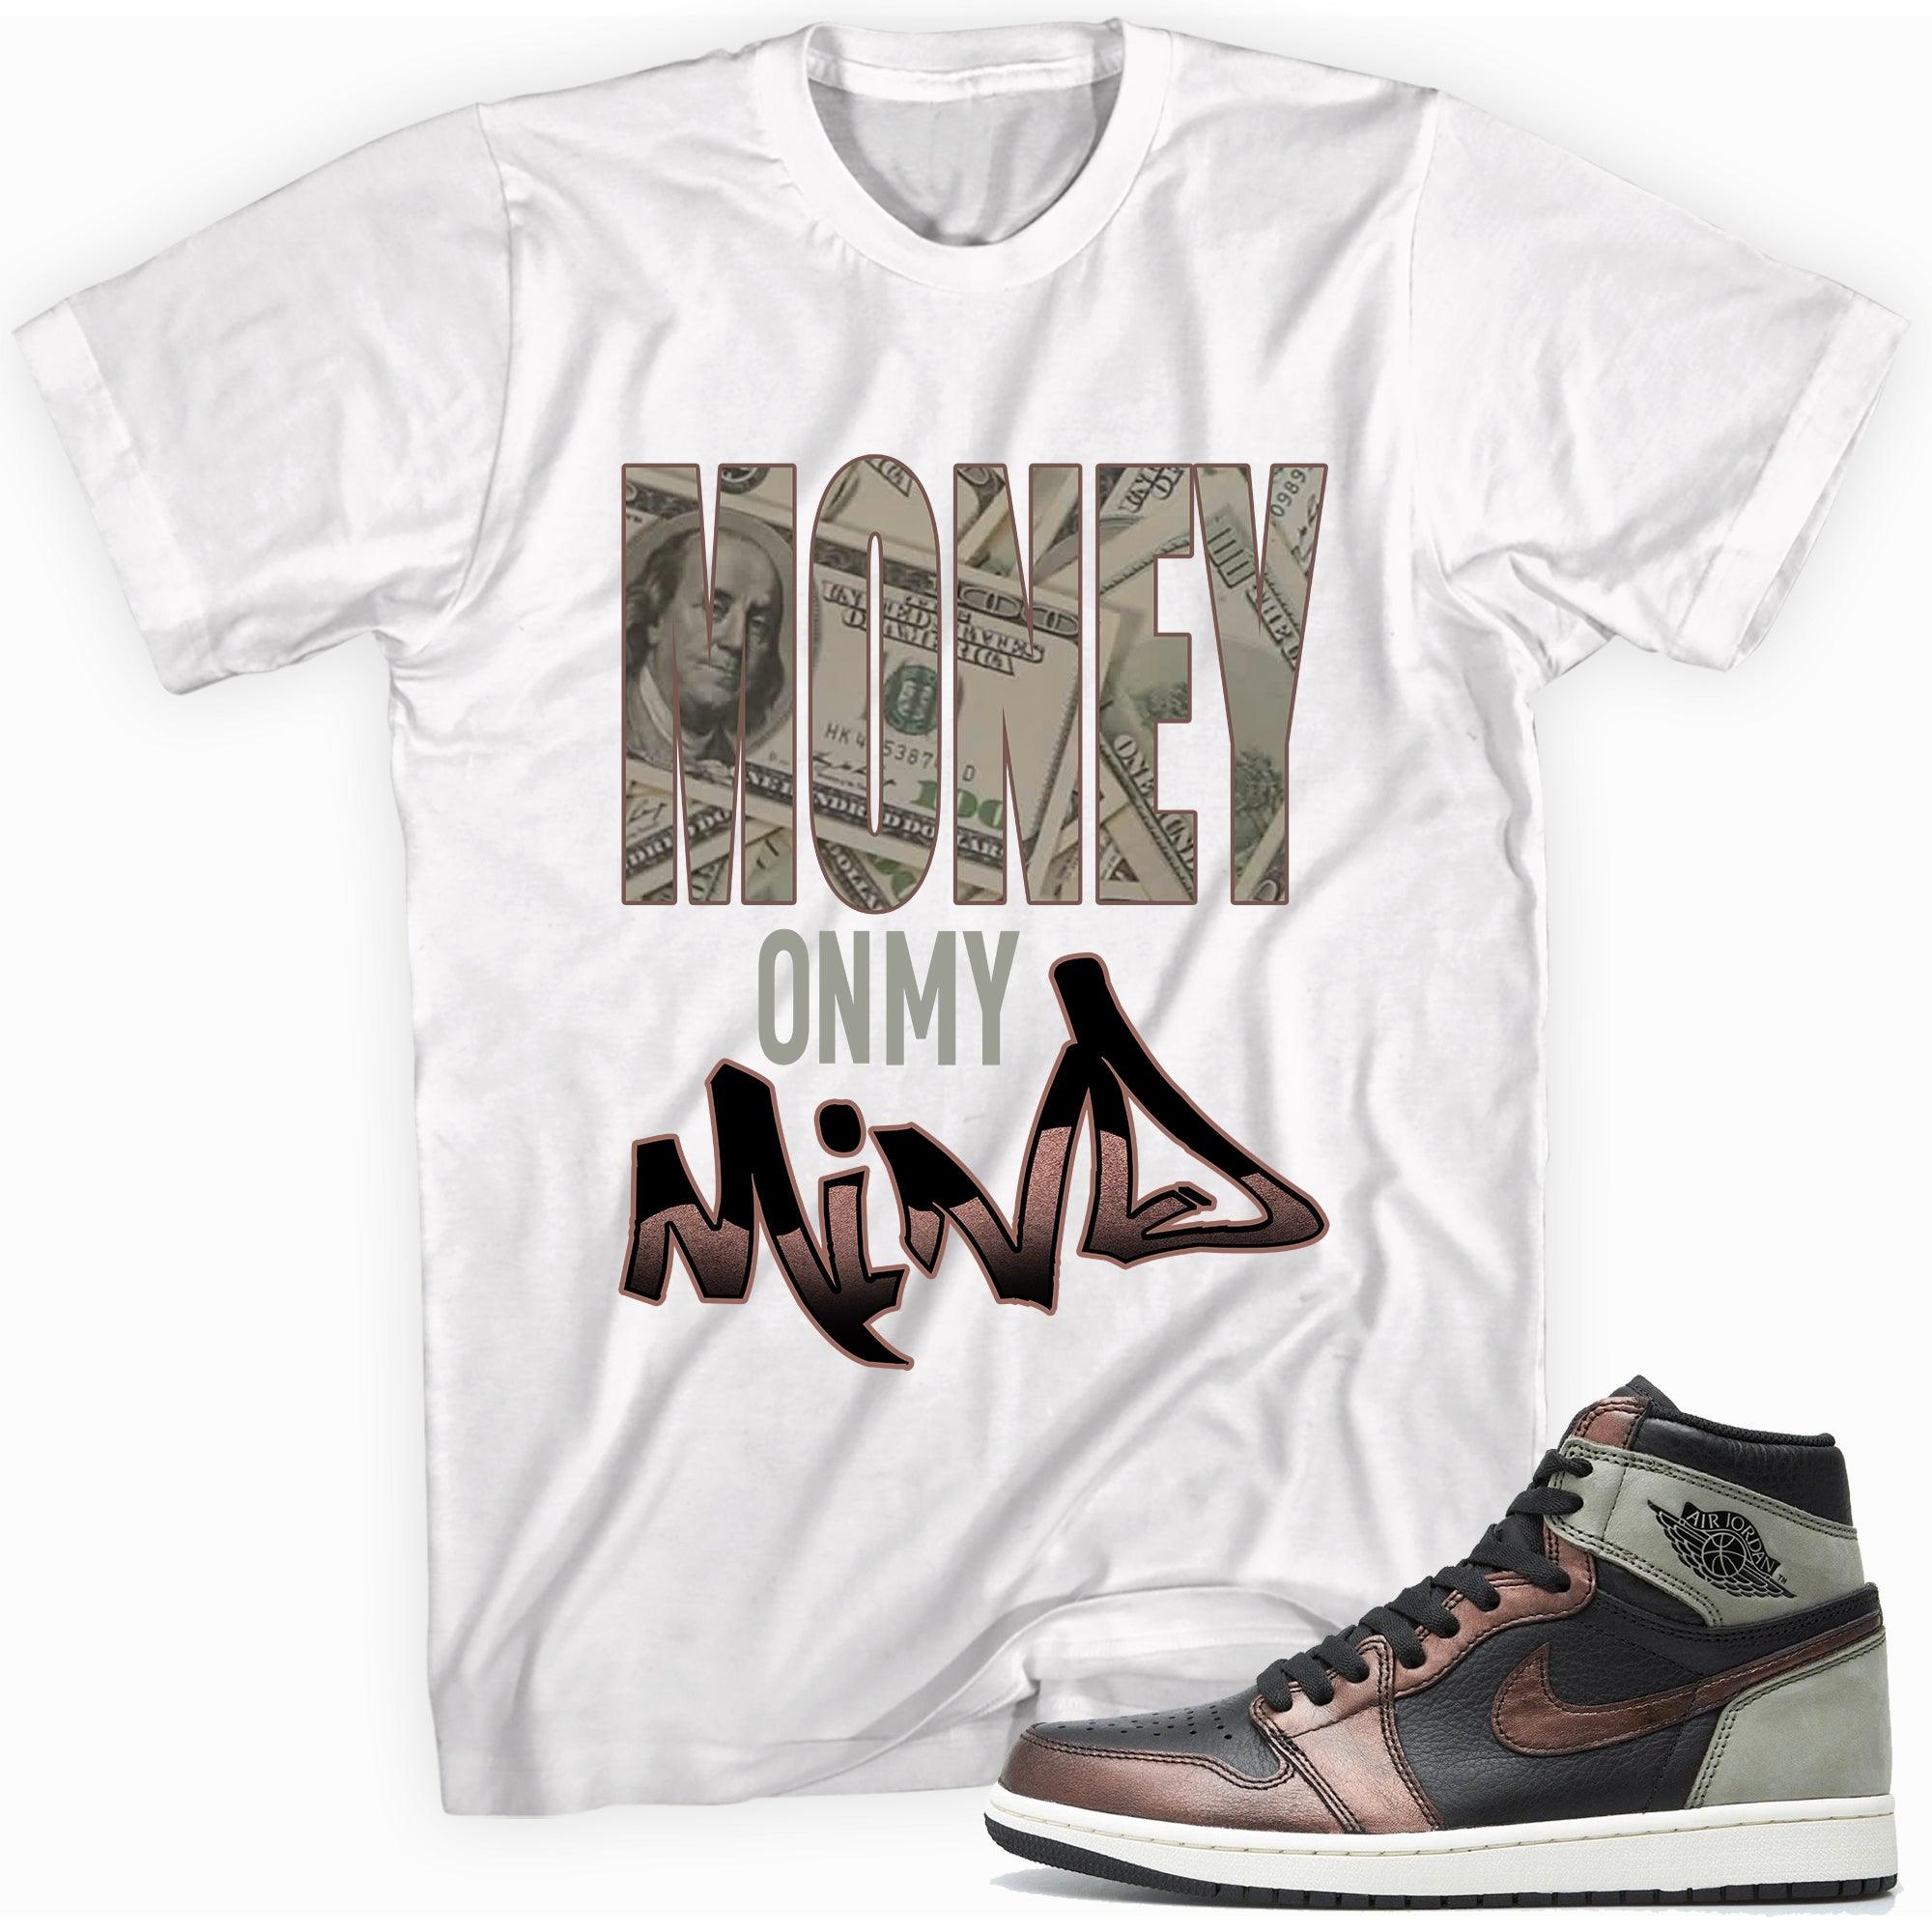 Money On My Mind Shirt Air Jordan 1s Patina photo